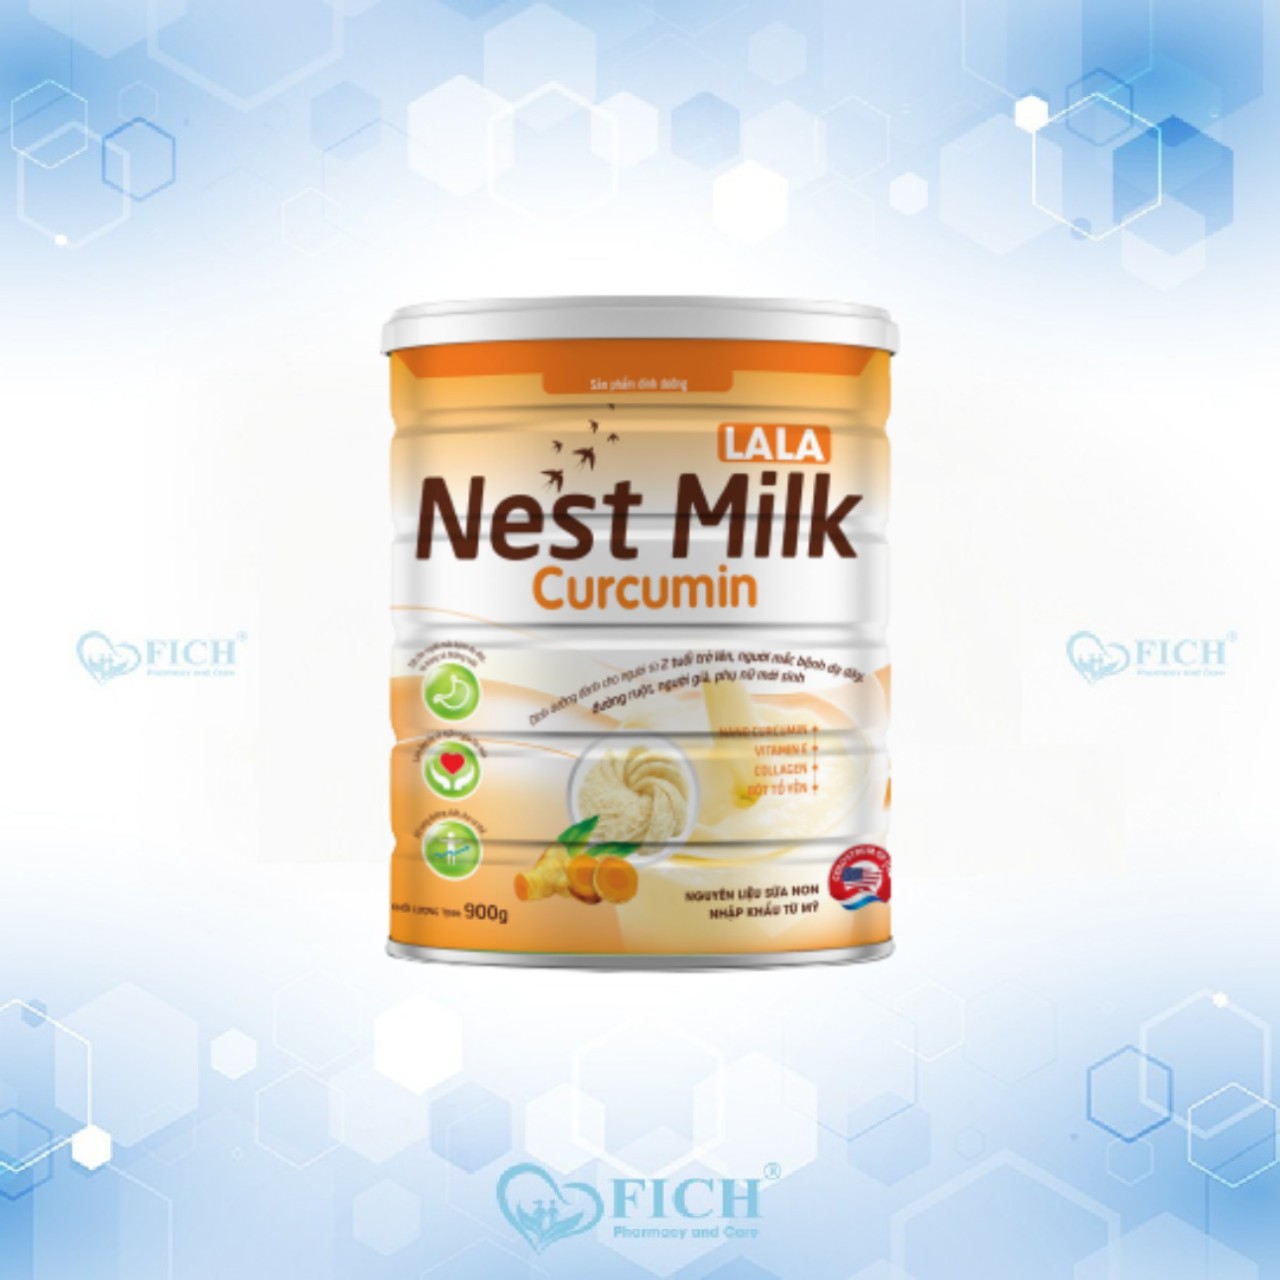 Nest milk curcumin